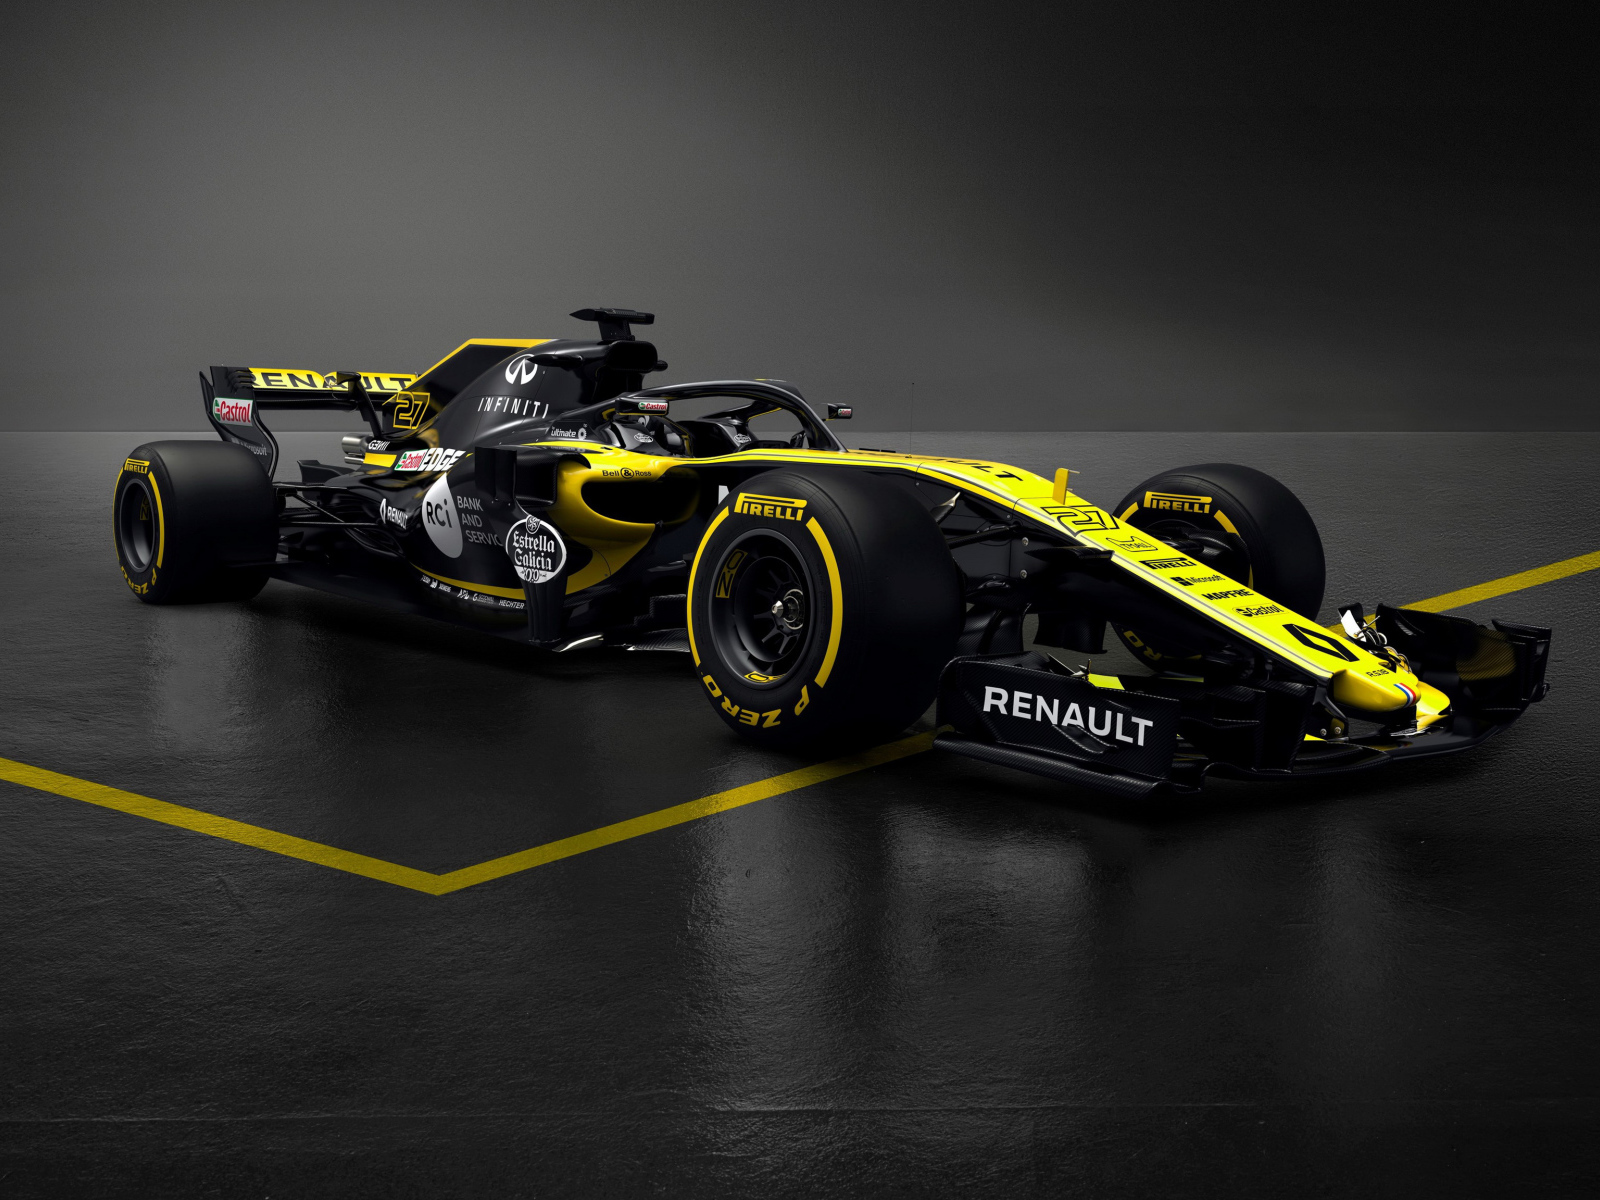 Гоночный автомобиль Renault RS18 F1, 2018